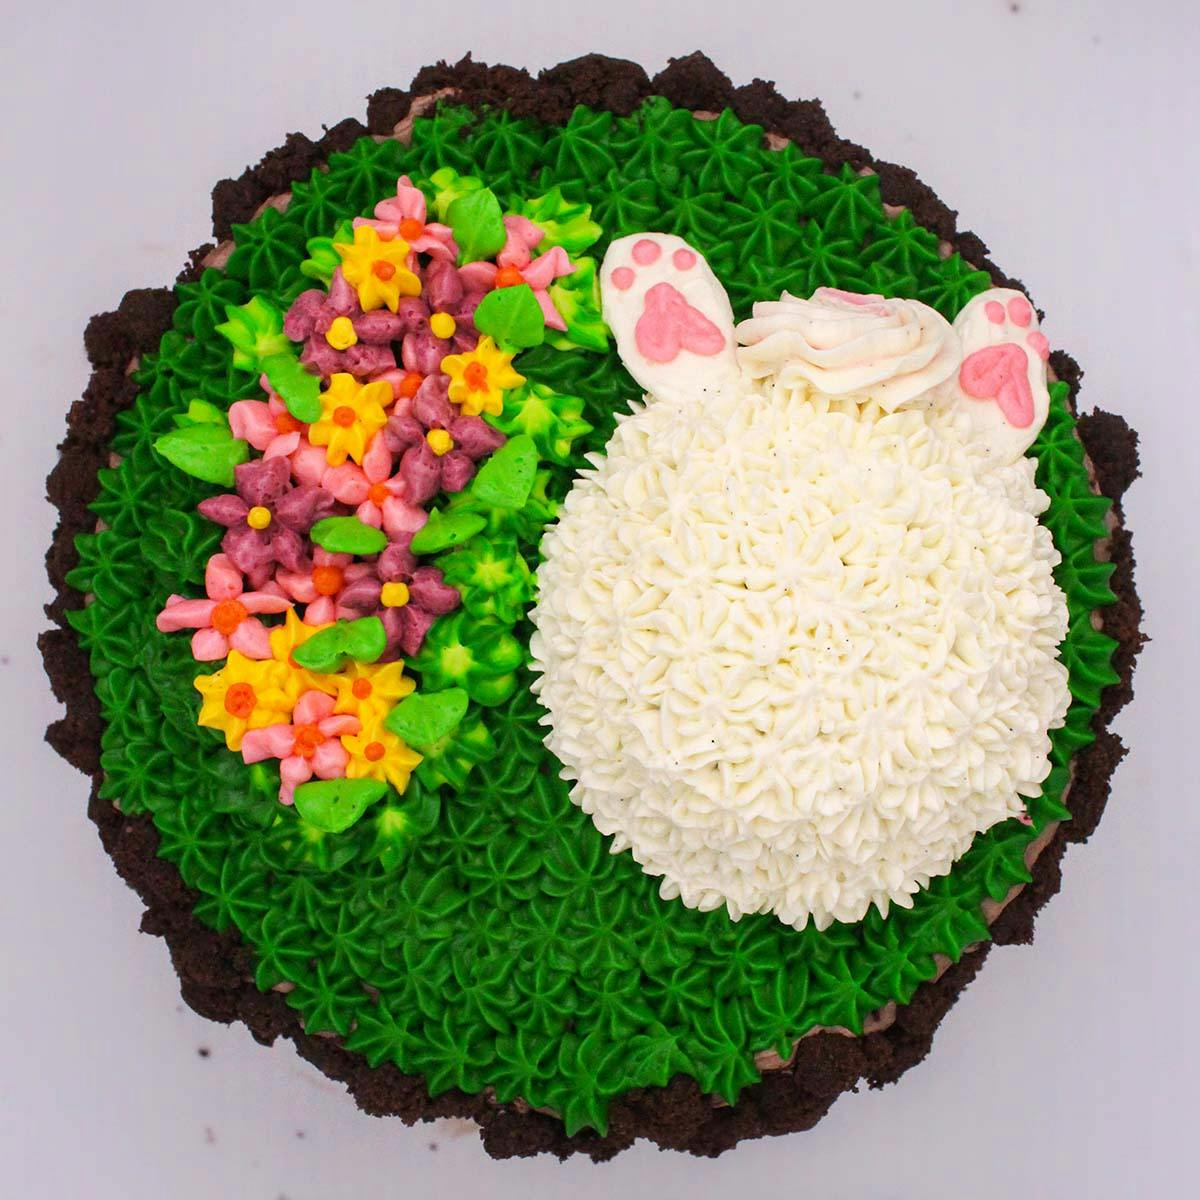 Adorable Vintage Inspired Easter Bunny Butt Cake | Julie Blanner